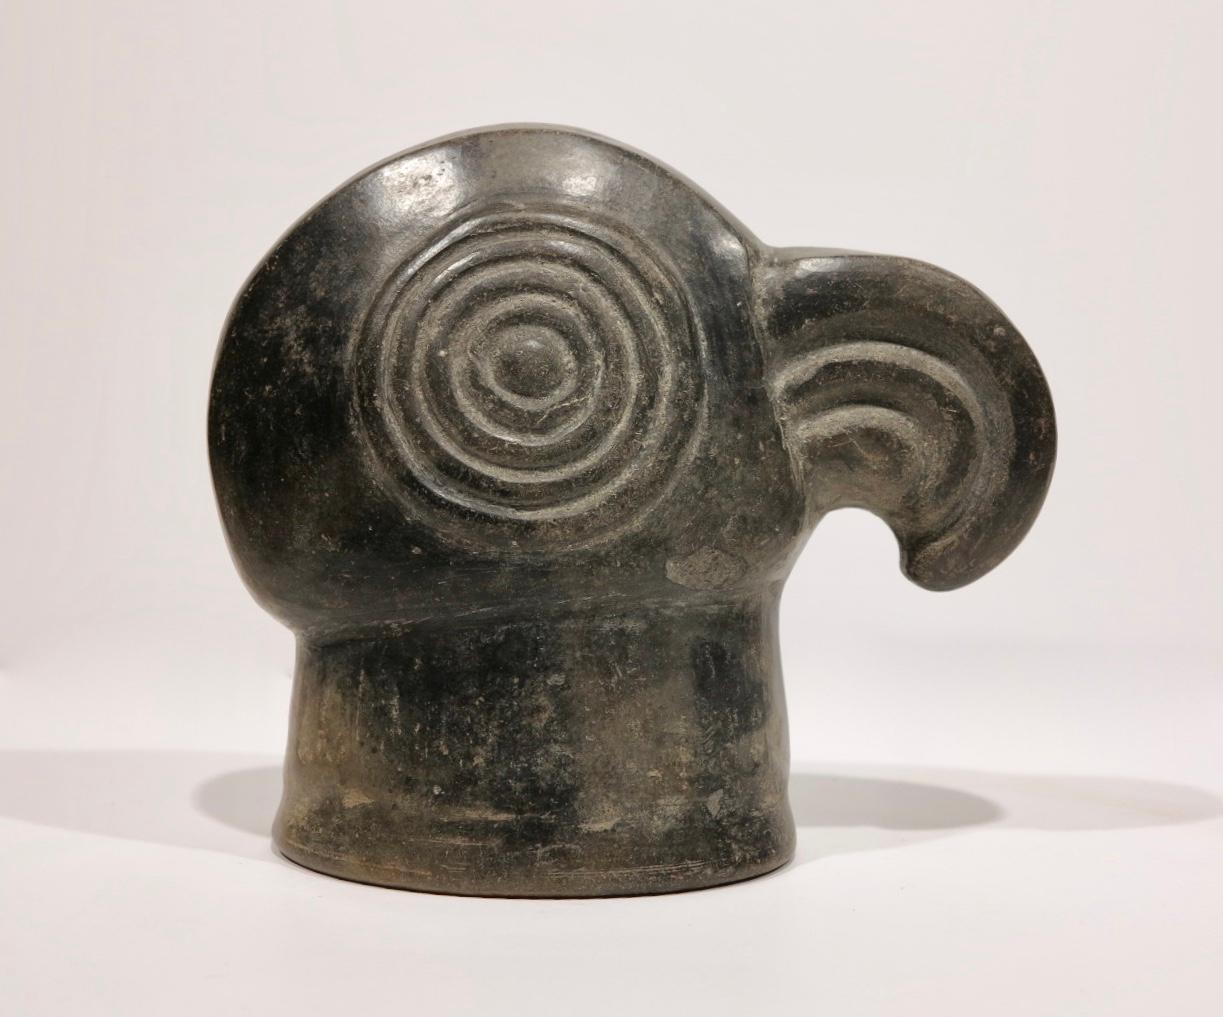 Superbe élément figuratif d'oiseau exotique avec plateforme. Chimu Inca, Pérou, vers 1500. Grès noir poli, mesure h.5 3/8 x l. 6.25 x l. 2.75 pouces. Quelques éclats sur le bord et sur la joue inférieure gauche comme illustré dans les photos de